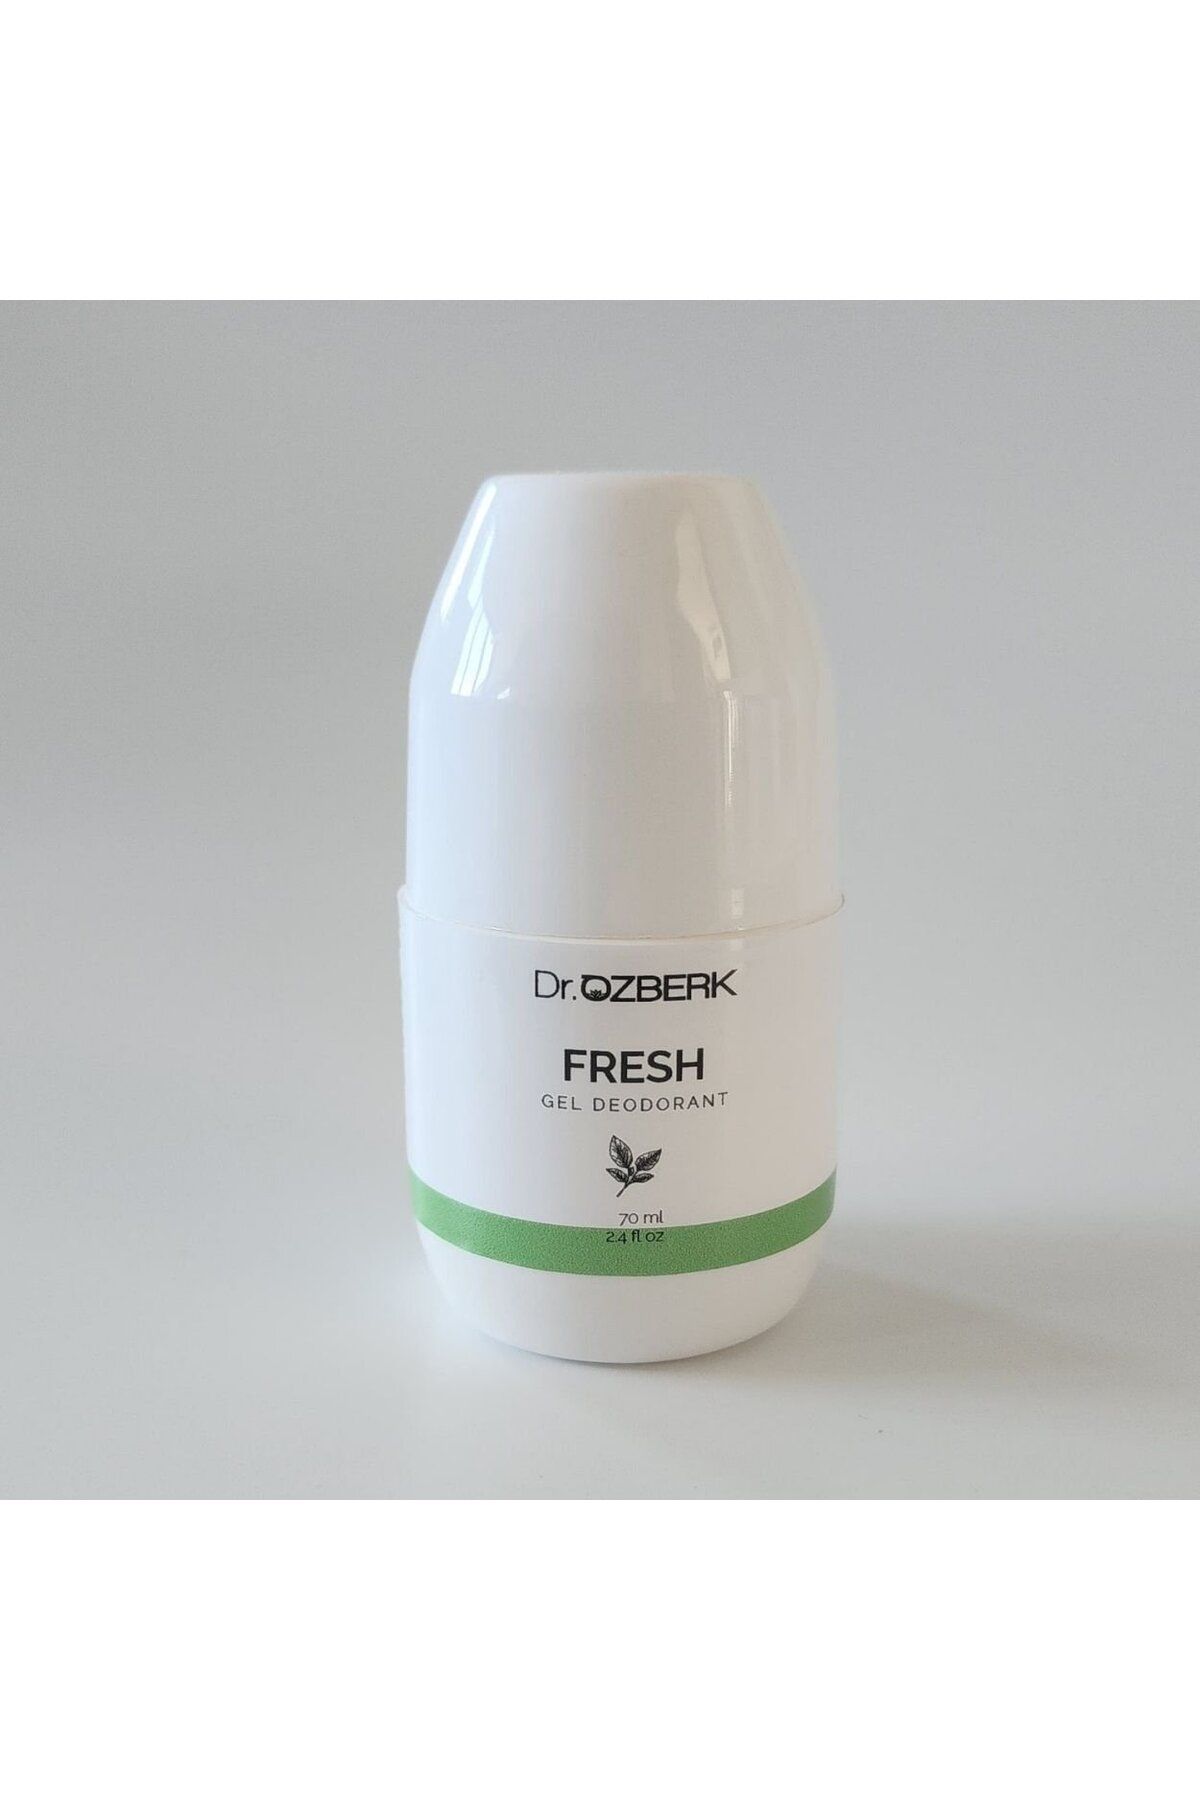 Dr. ÖZBERK Fresh Gel Deodorant